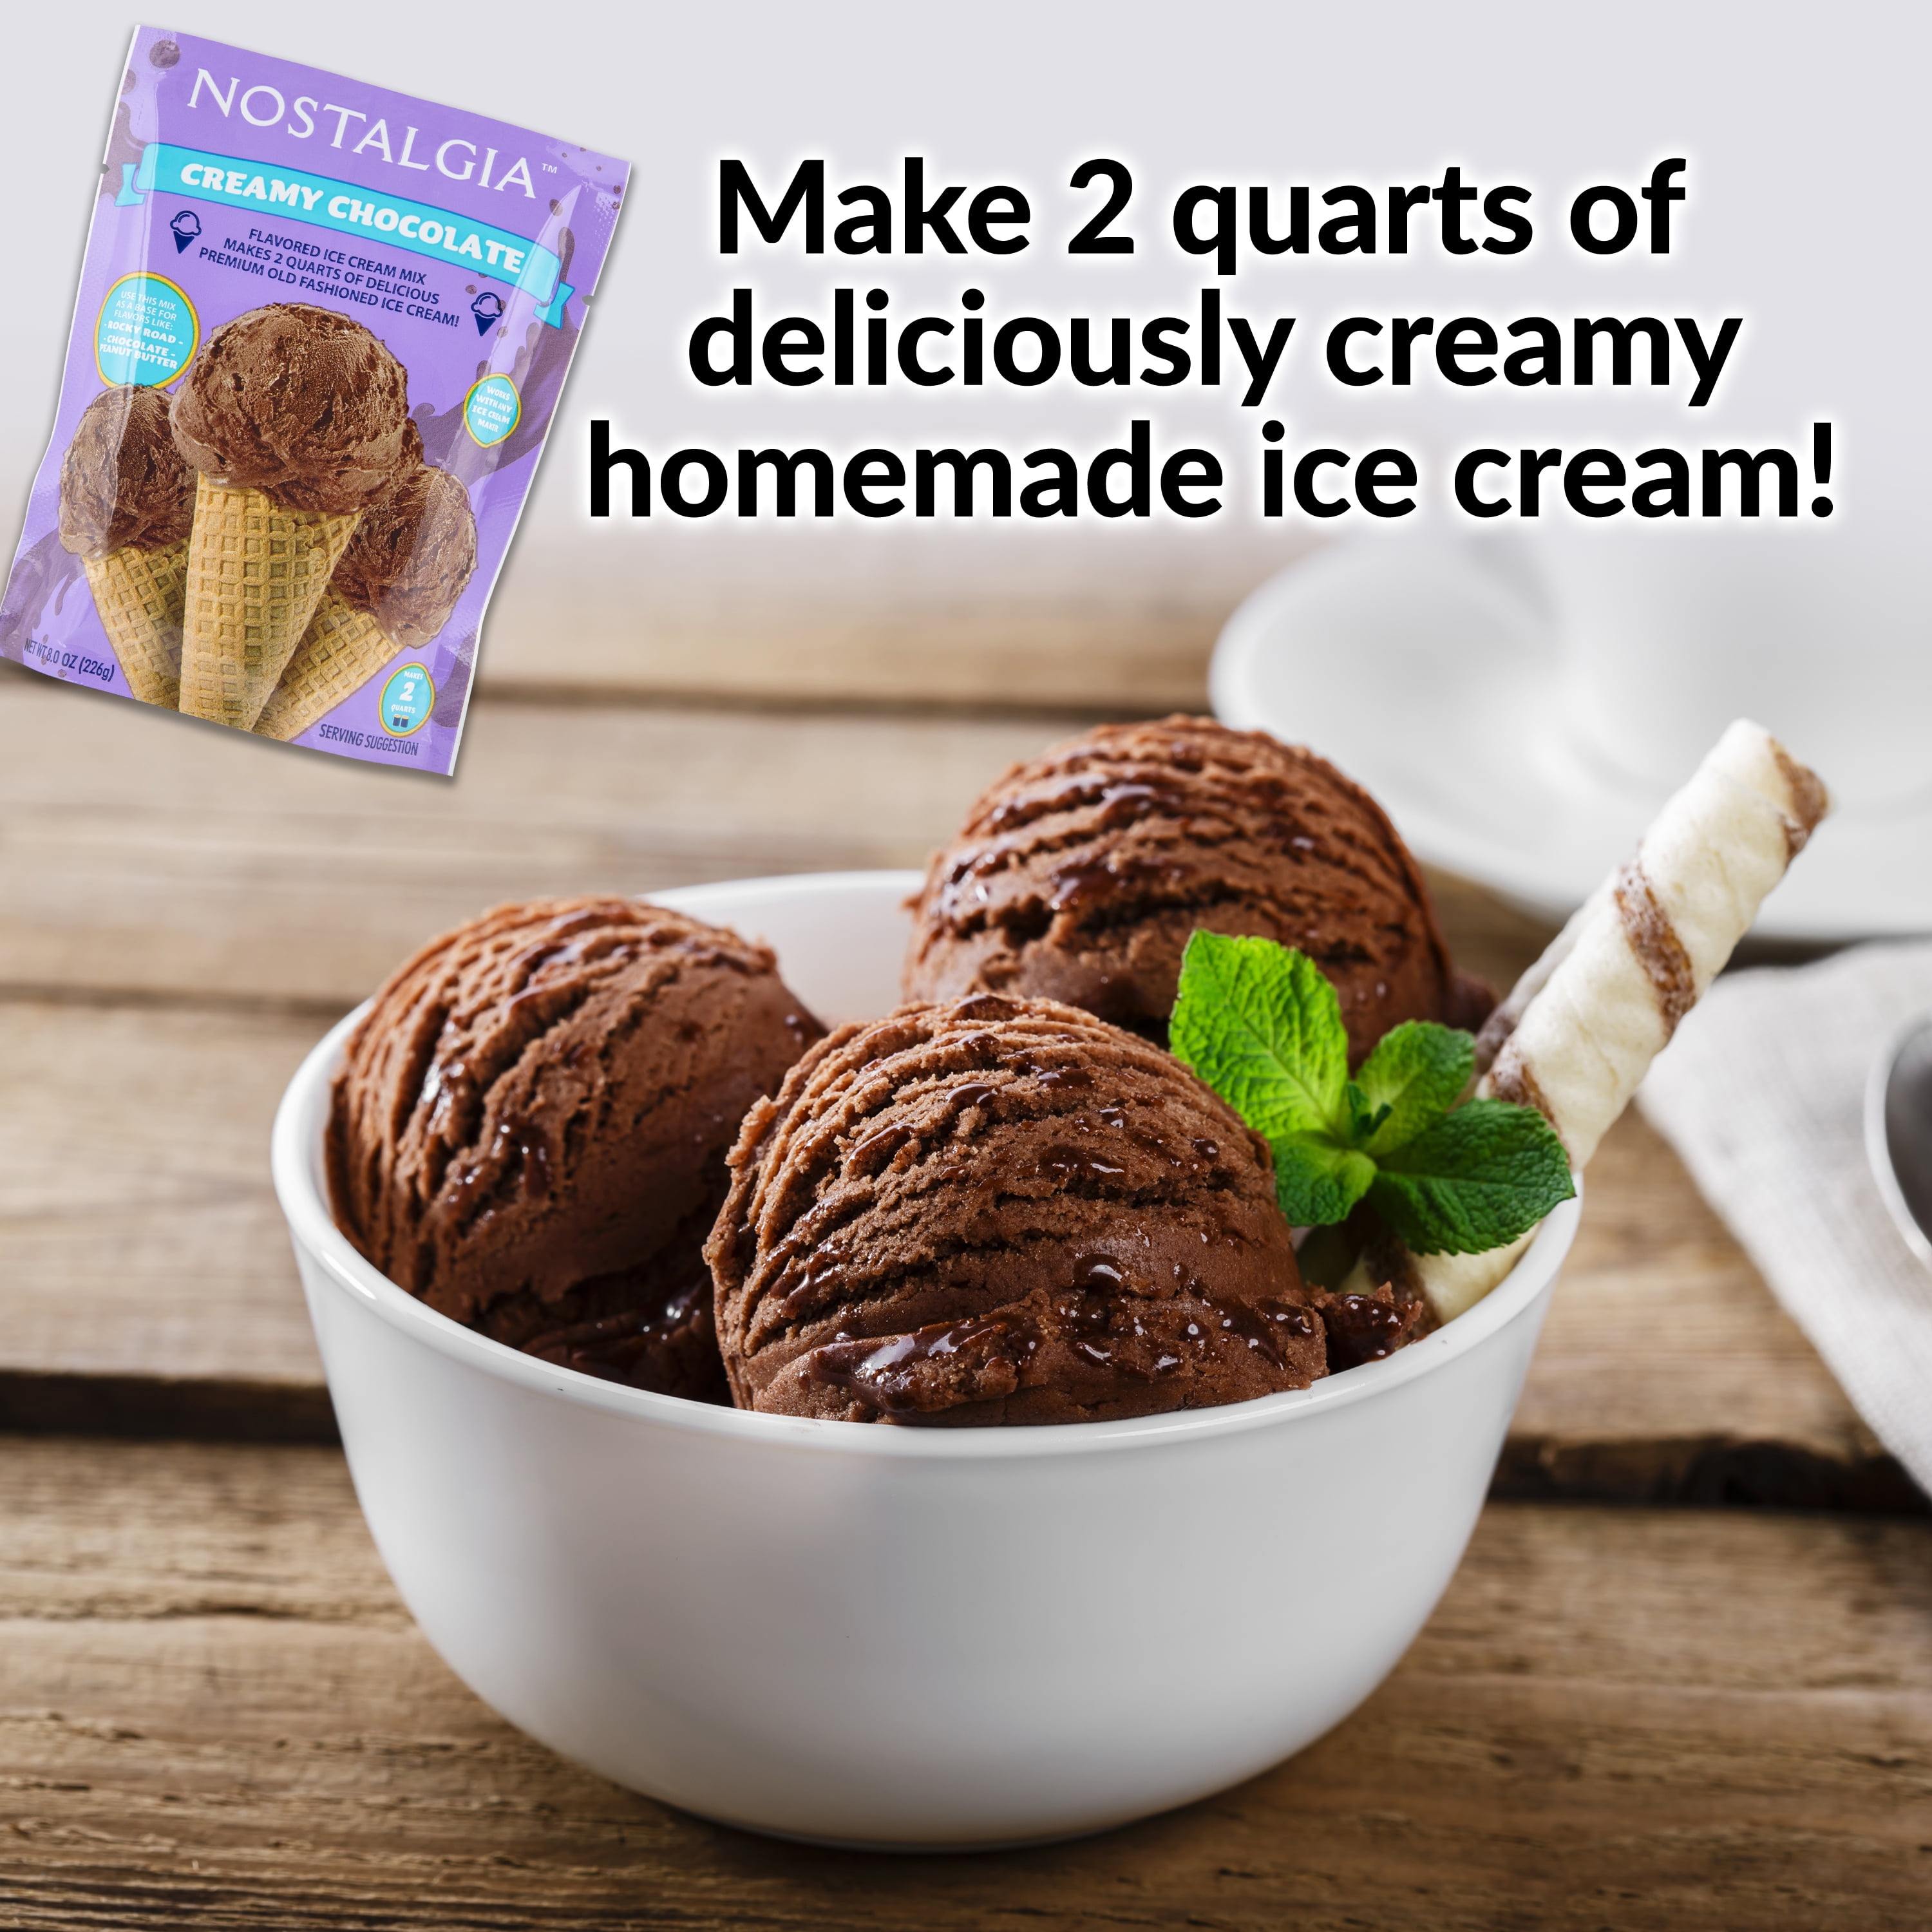  Nostalgia 2-Quart Homemade Premium Vanilla Crème Ice